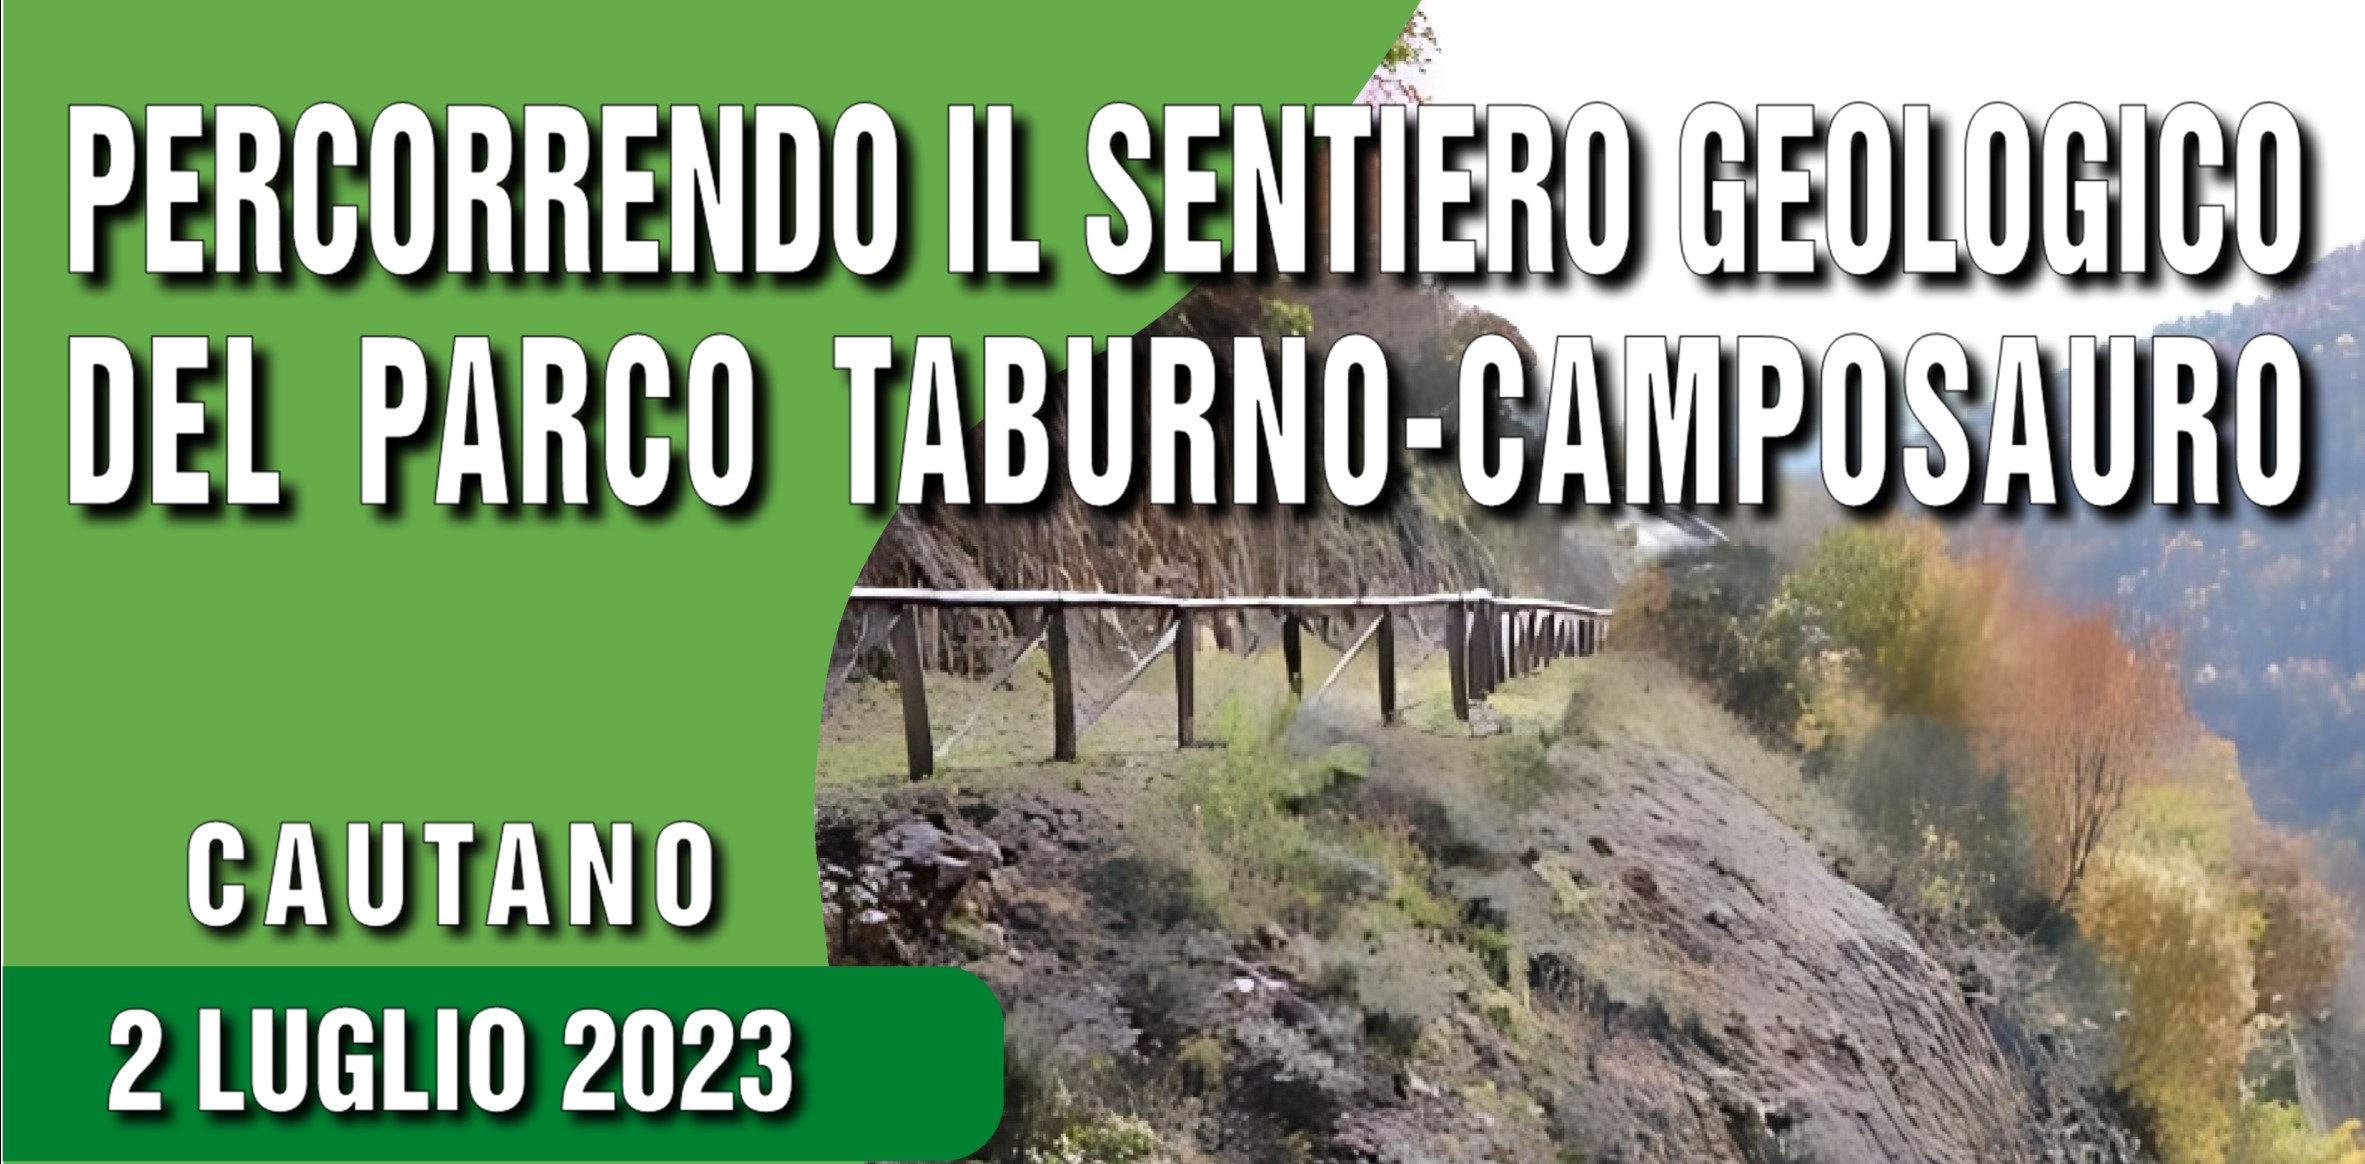 “Percorrendo il Sentiero Geologico del Parco del Taburno – Camposauro’’: l’escursione il 2 luglio